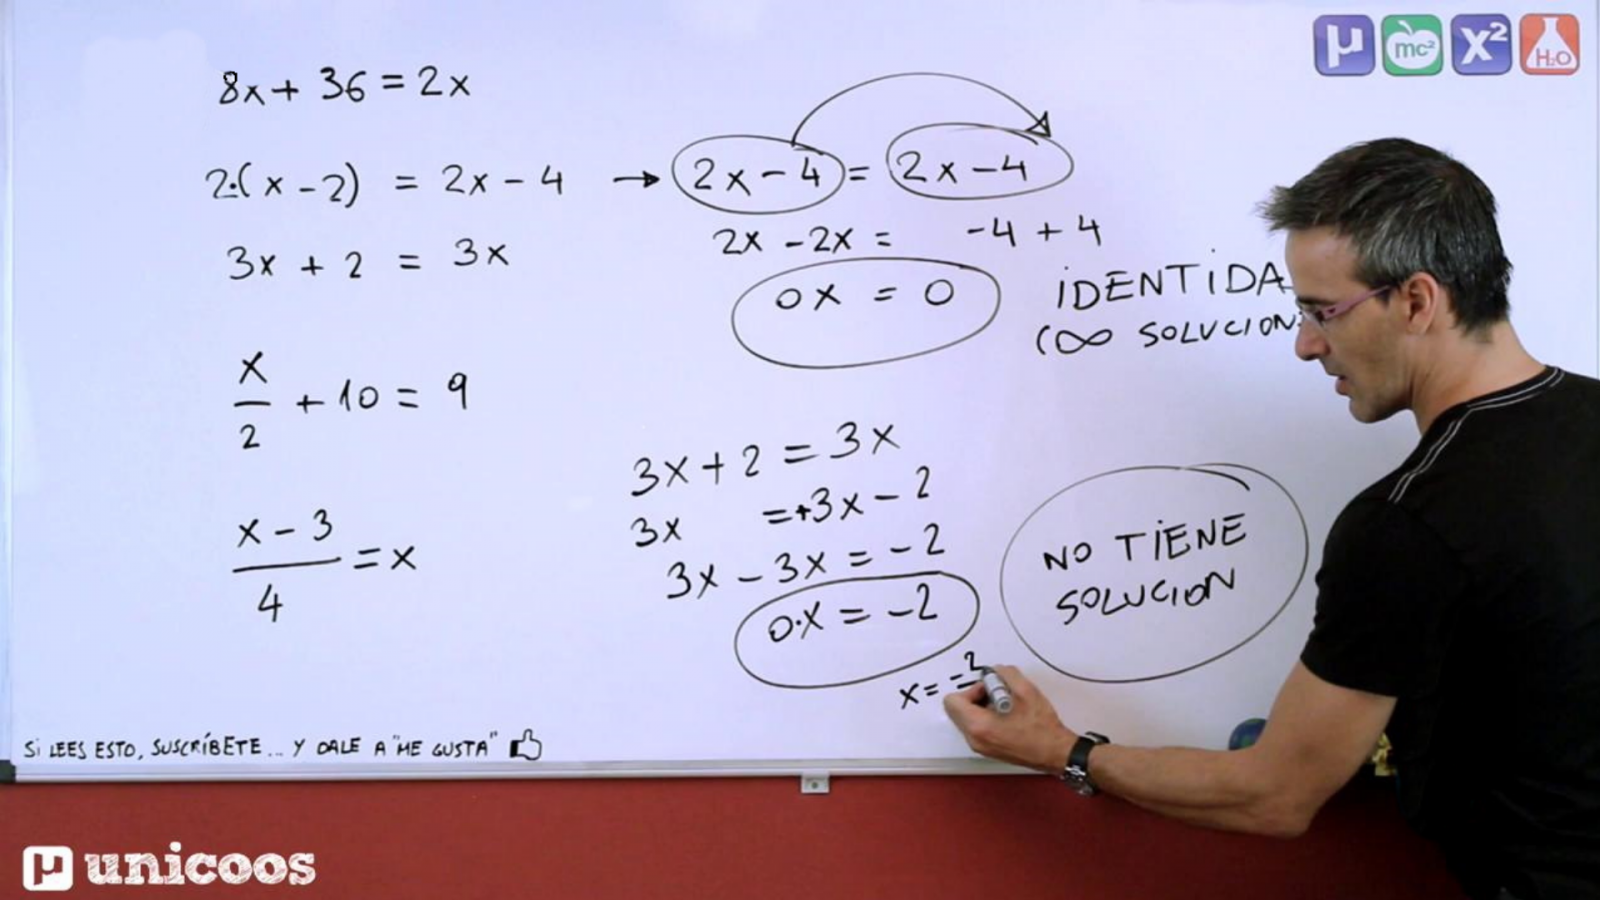 Aprendemos en casa - De 12 a 14 años - Matemáticas: Ecuaciones Primer Grado 1 con David Calle - RTVE.es